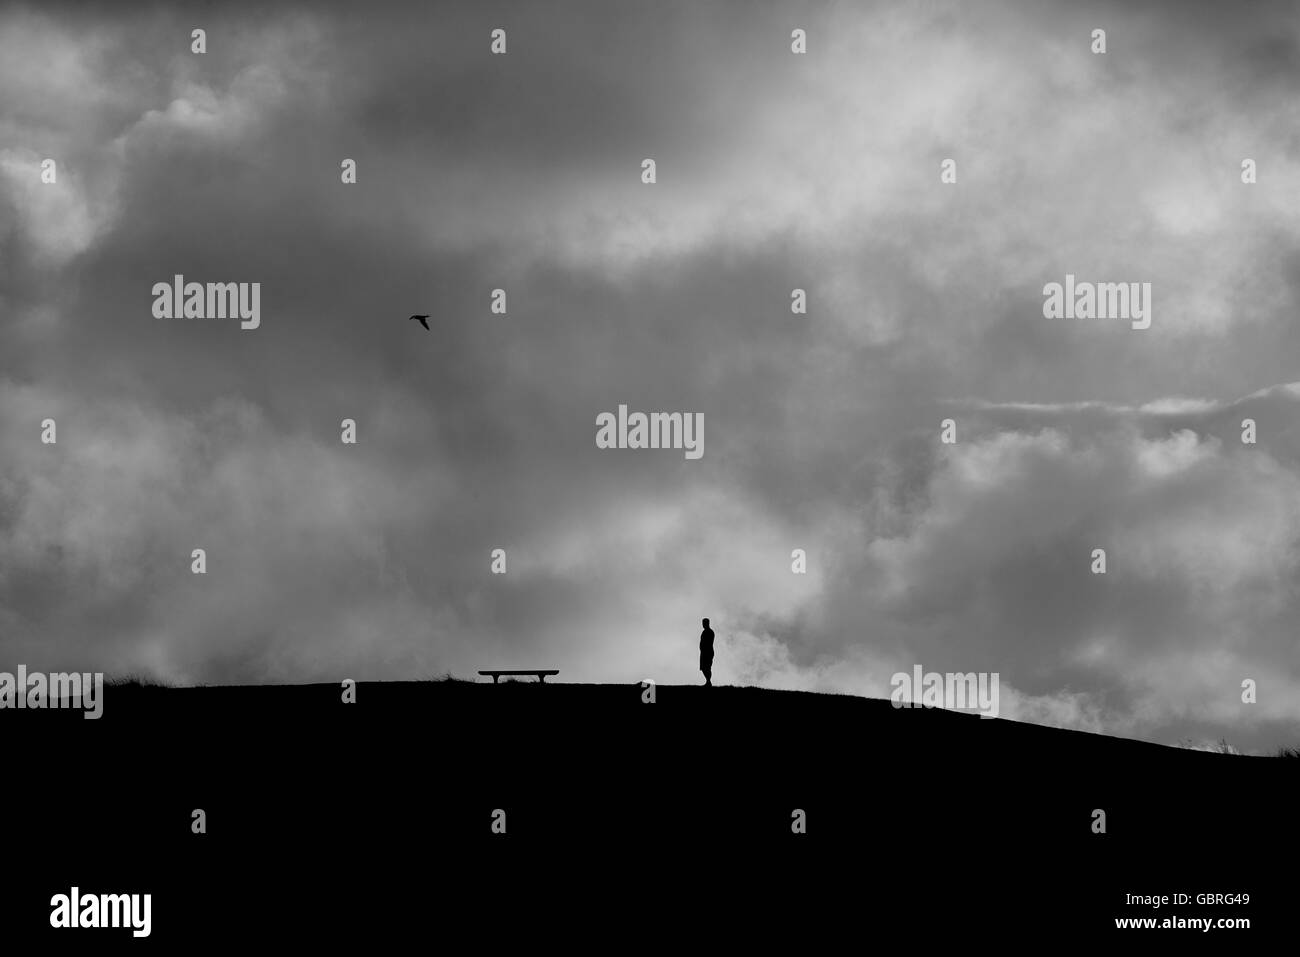 Einsamer Silhouette Abbildung gegen Gewitterhimmel Crescent Head NSW Australia Stockfoto